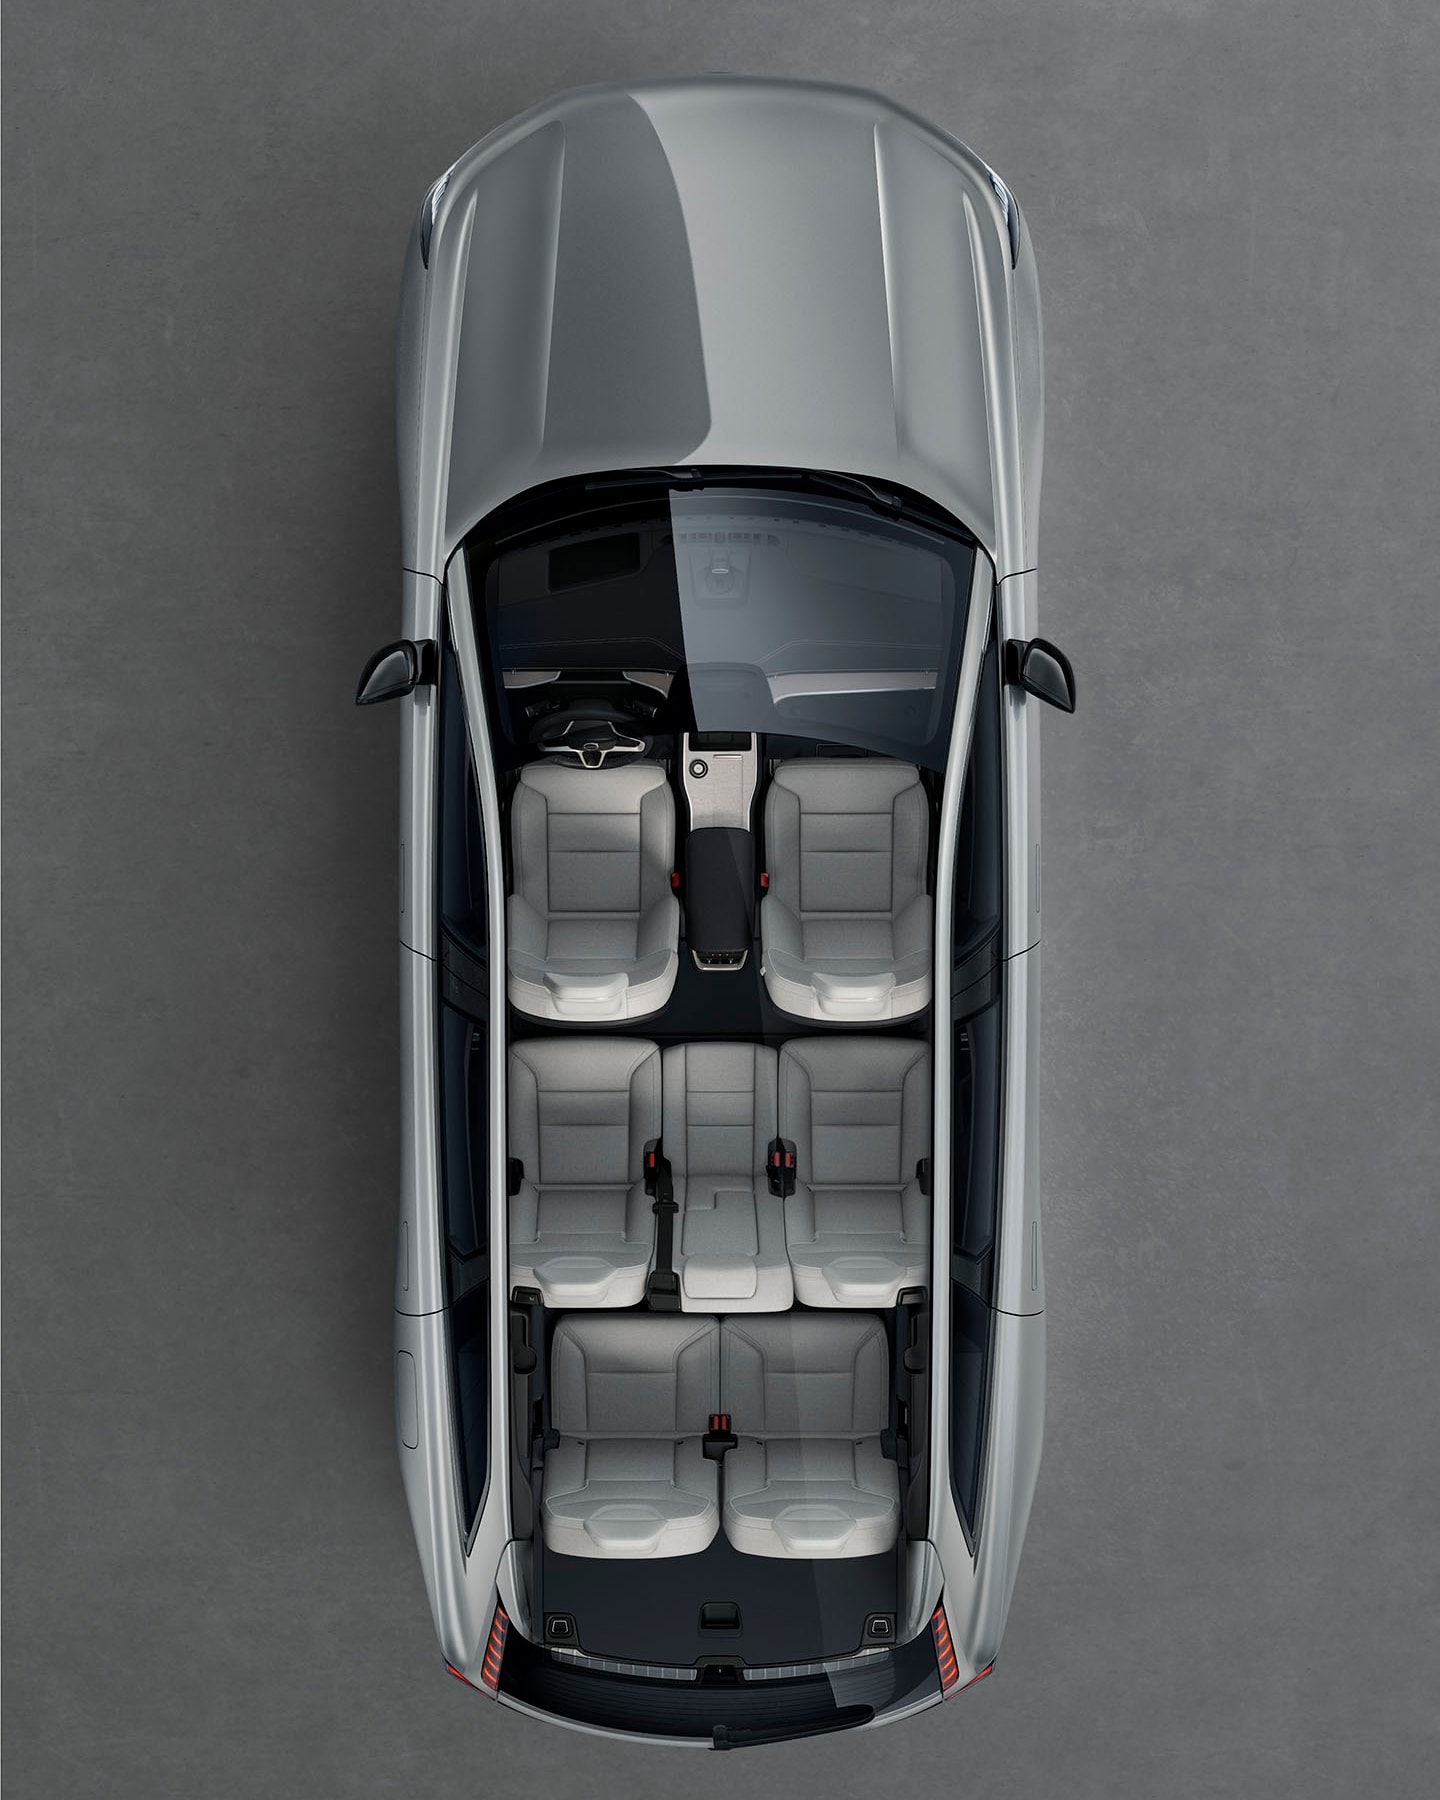 El habitáculo de 7 plazas de un Volvo EX90 visto desde arriba.